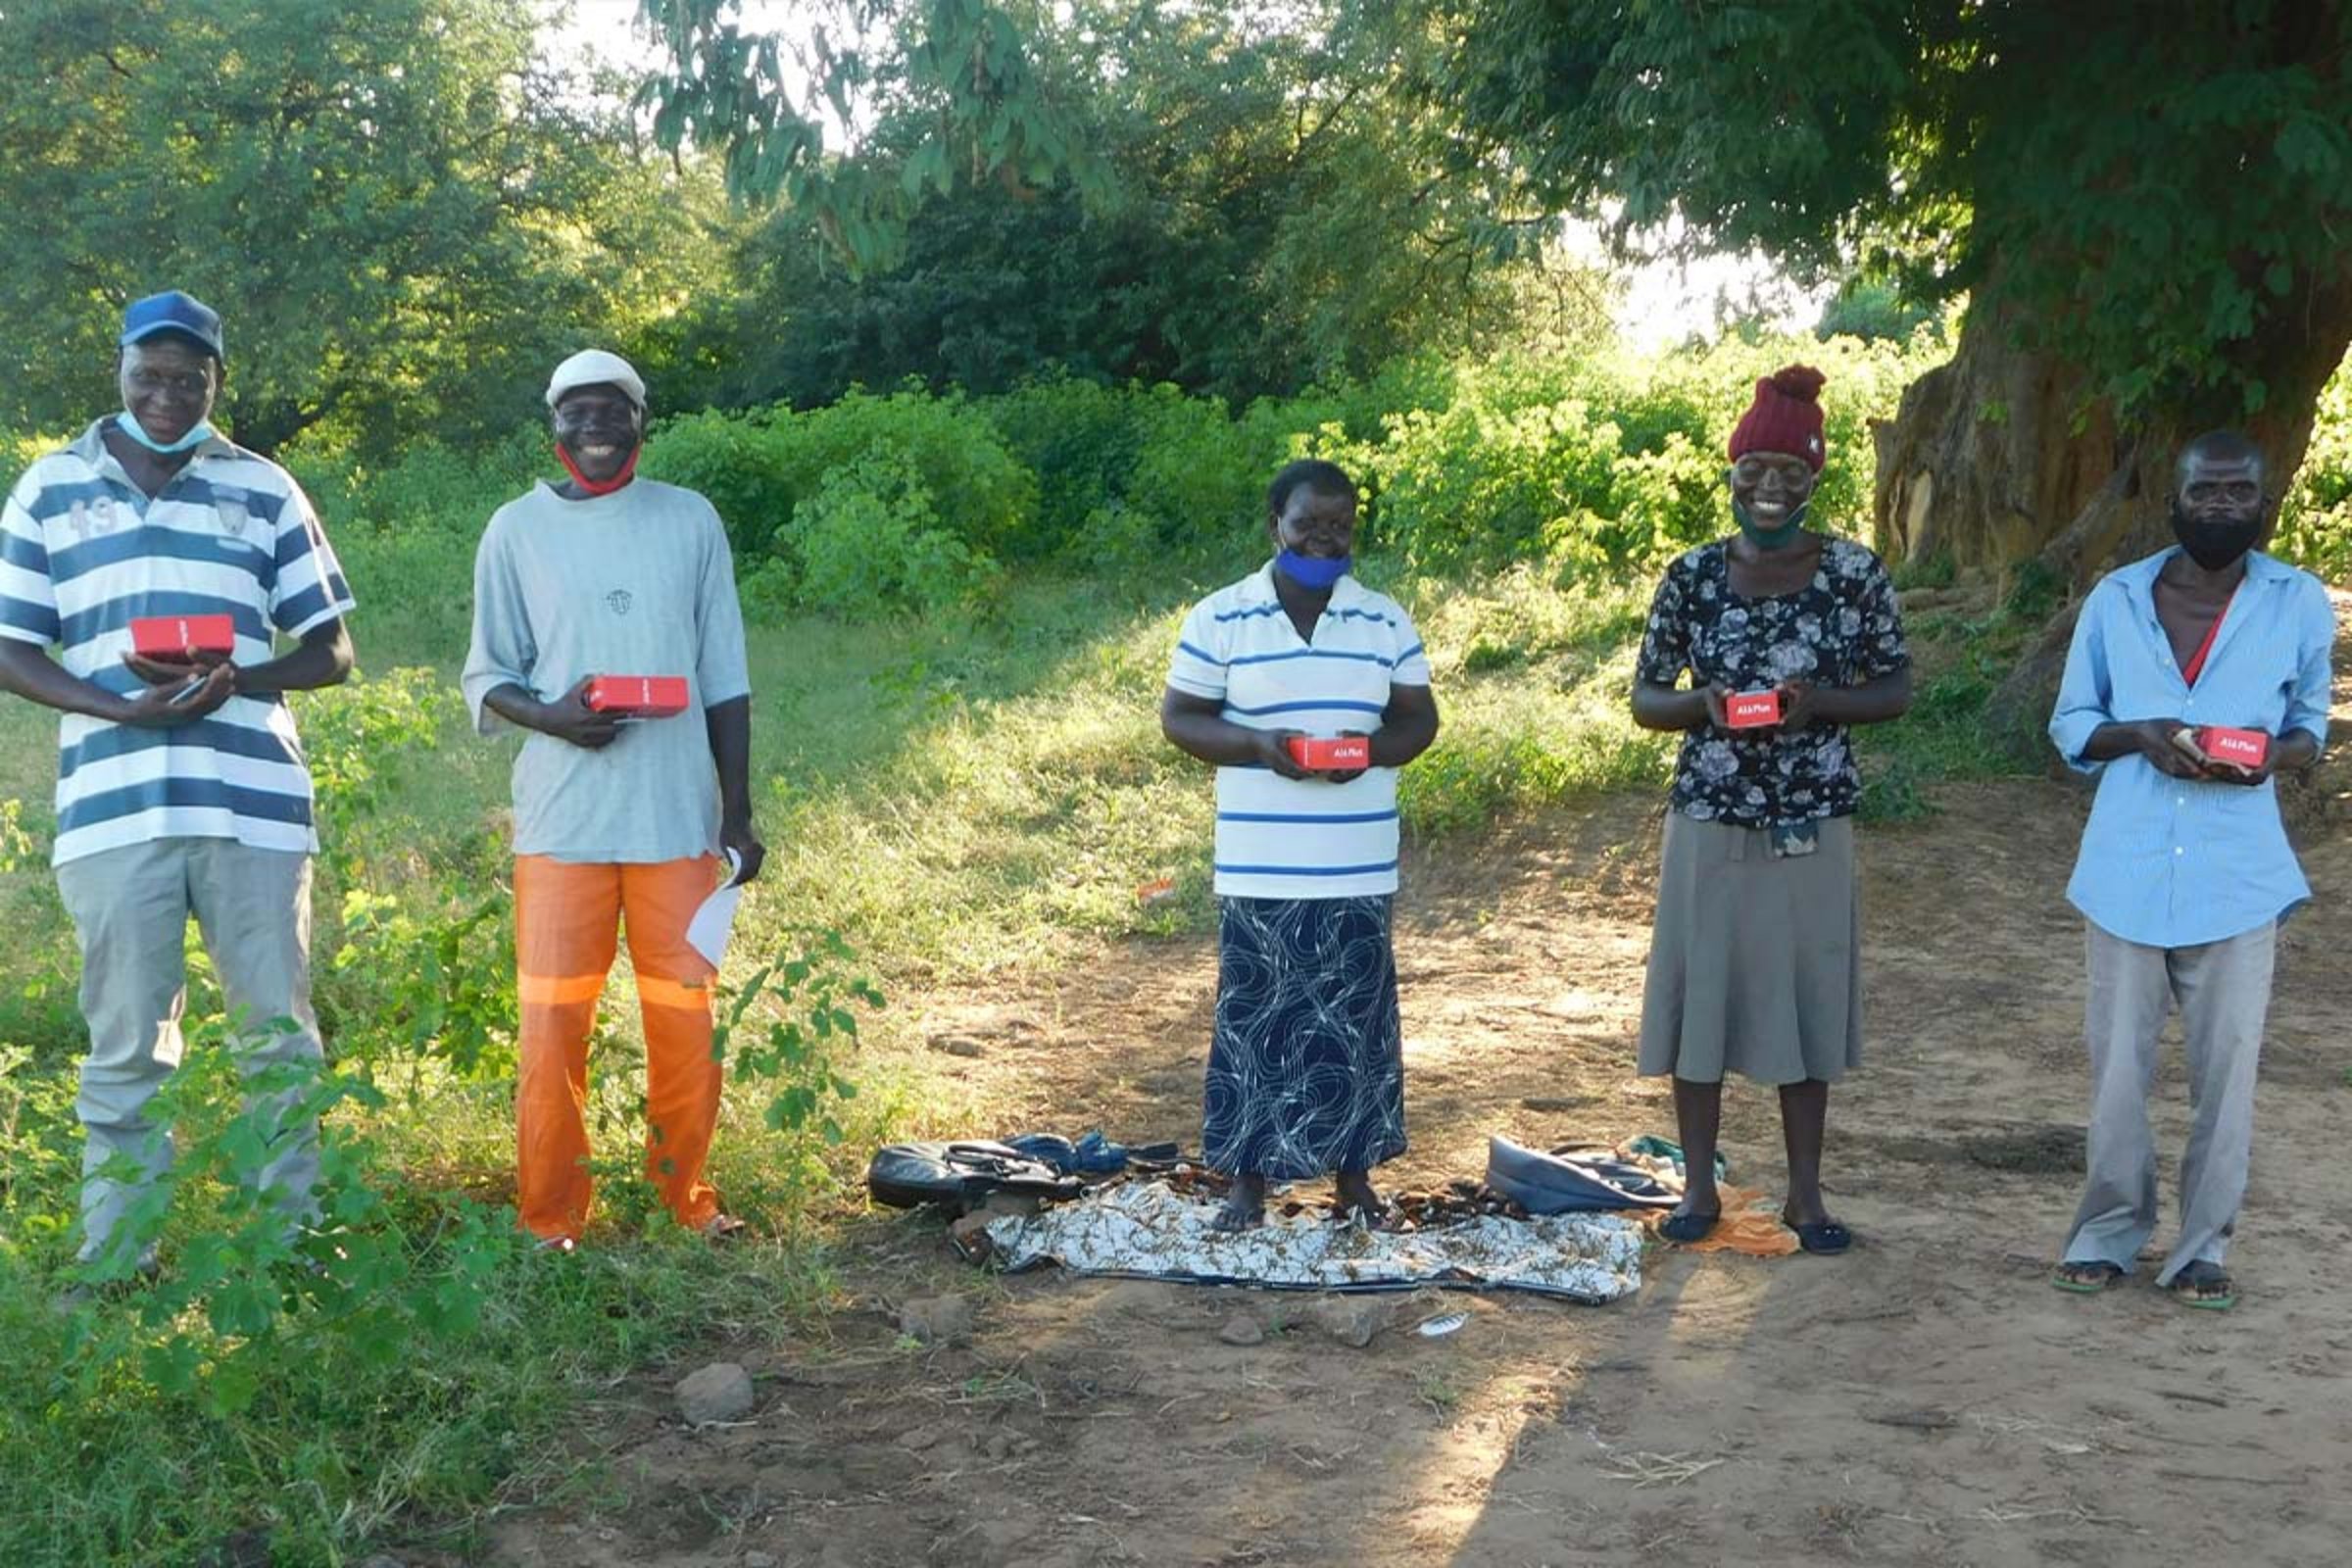 Spenden Simbabwe: Die Lead Farmer:innen erhalten Smartphones, um sich untereinander zu vernetzen und ihre Ergebnisse zu dokumentieren.